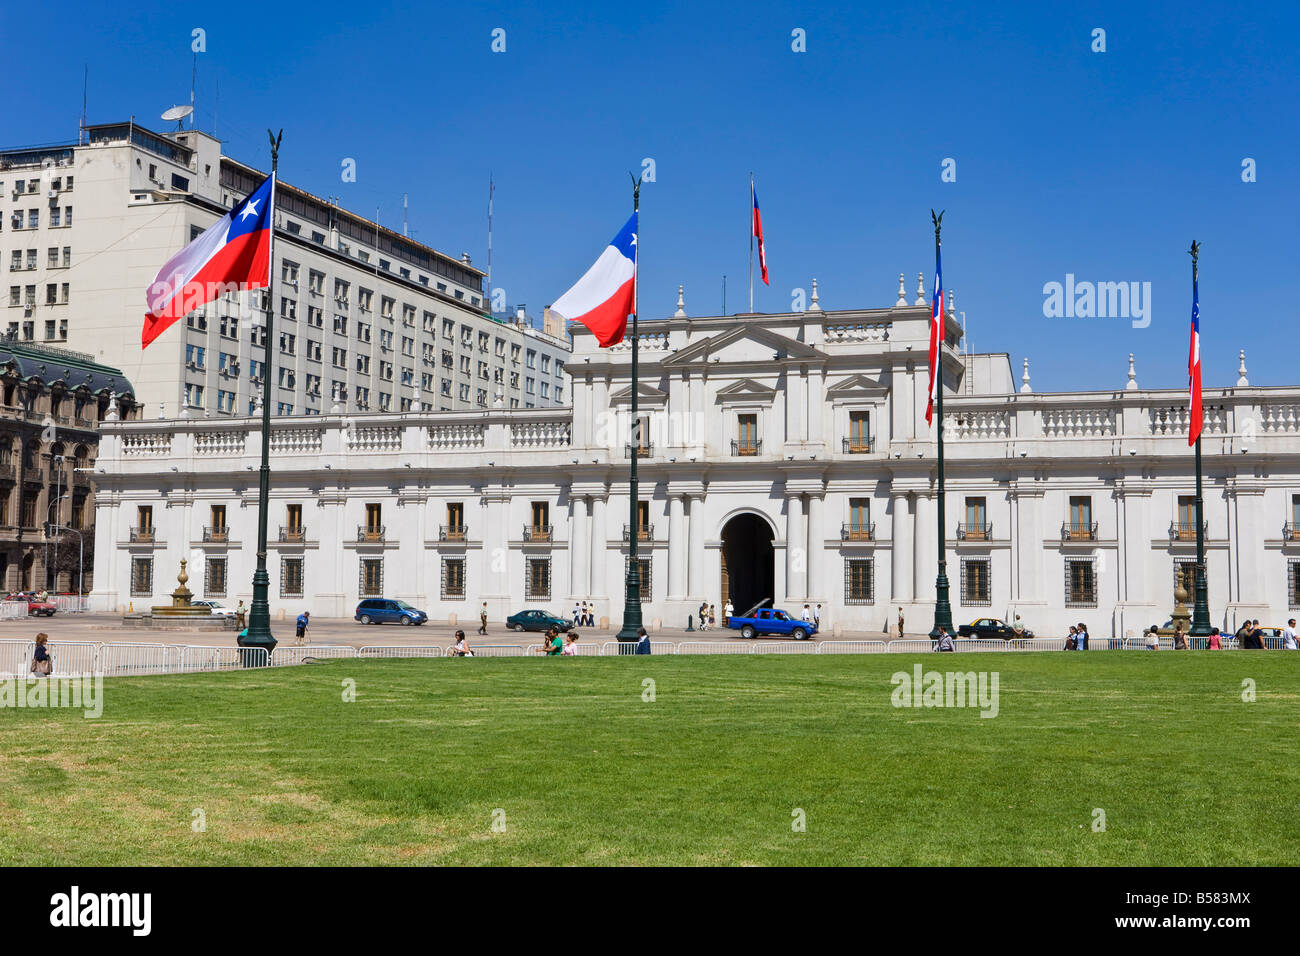 Palacio de la Moneda, Chile's presidential palace and the Plaza de la Constitucion, Santiago, Chile, South America Stock Photo